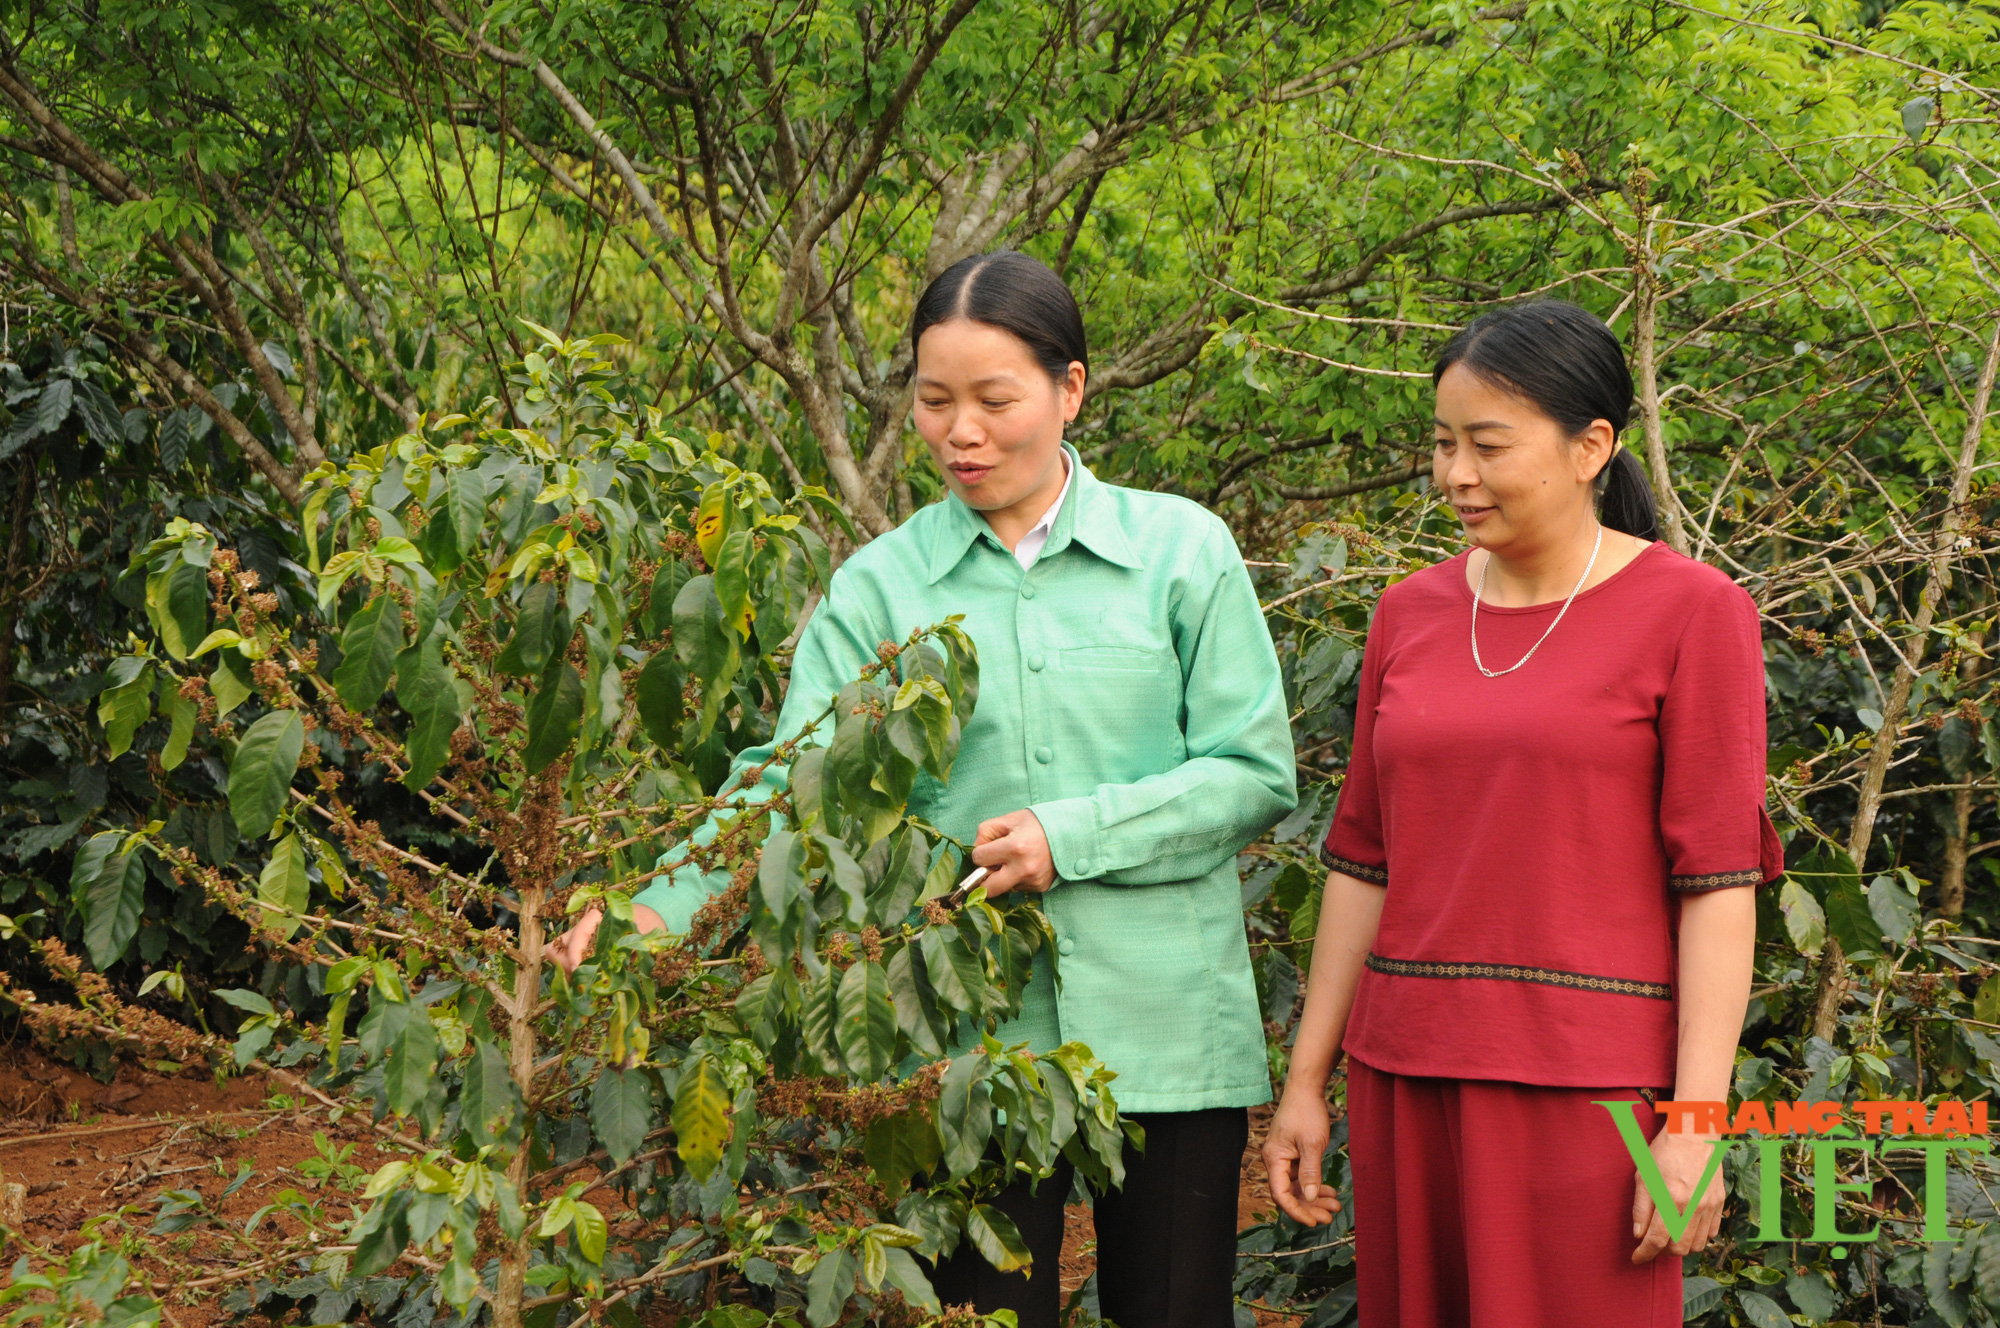 Hội Liên hiệp Phụ nữ tỉnh Sơn La: Hỗ trợ phụ nữ phát triển kinh tế, giảm nghèo bền vững - Ảnh 4.